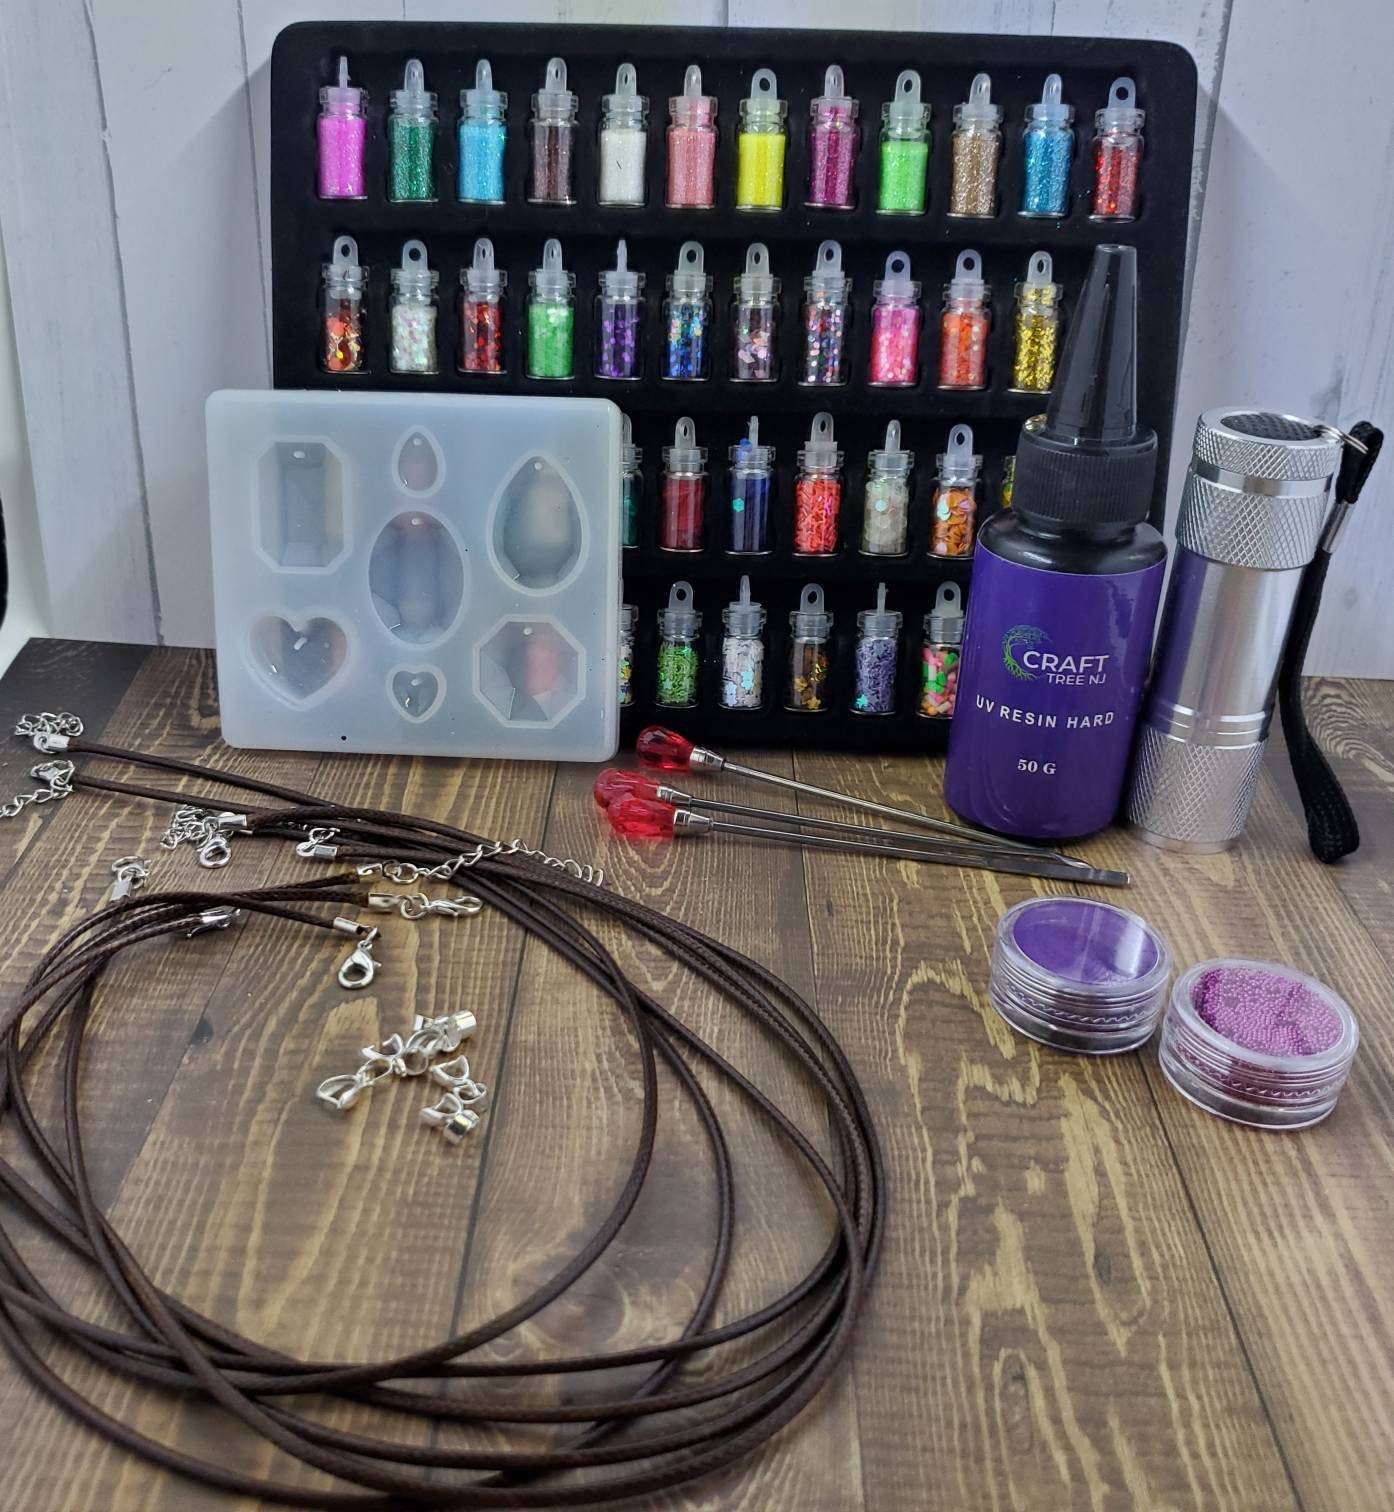 UV Resin Starter Kit, All Inclusive Craft Set for Resin Art 